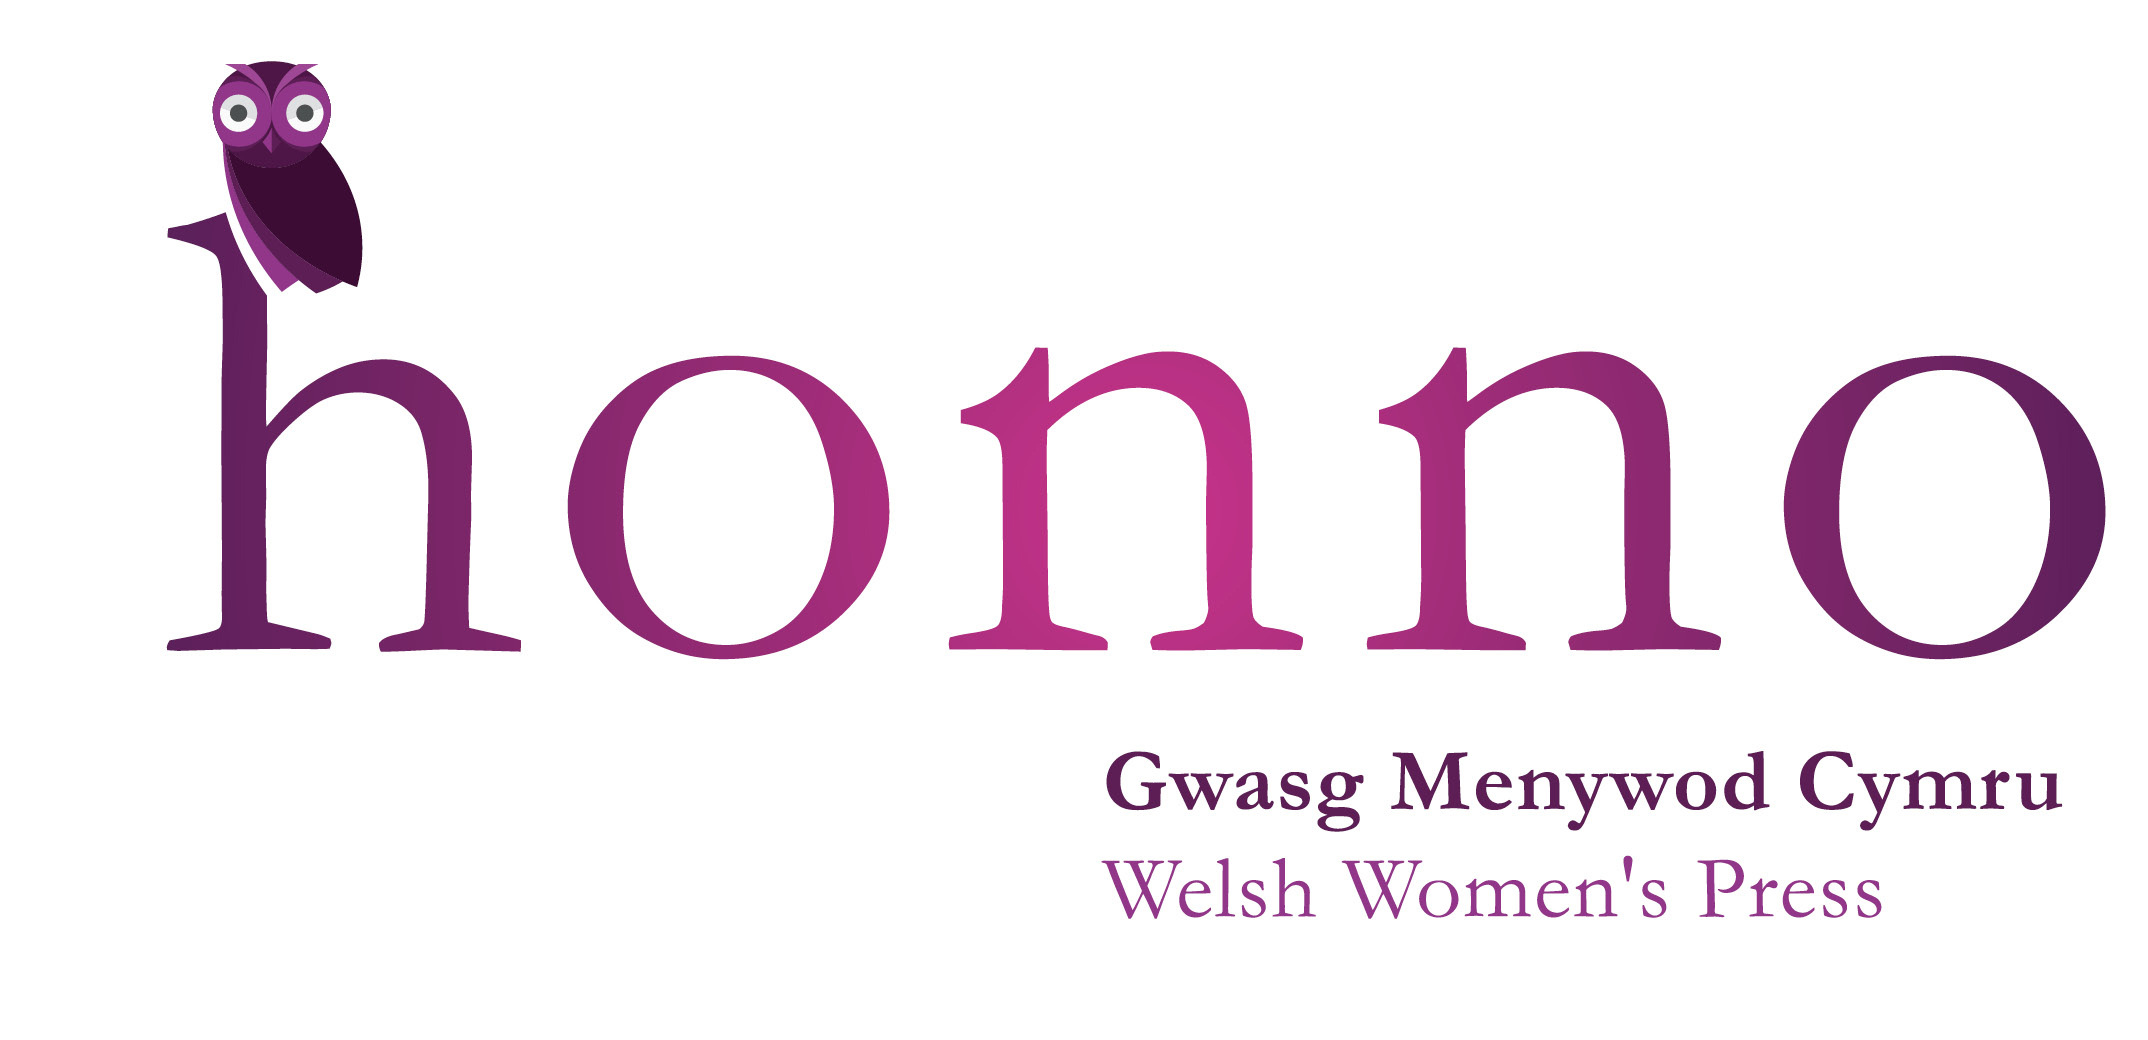 Honno Welsh Women's Press Logo